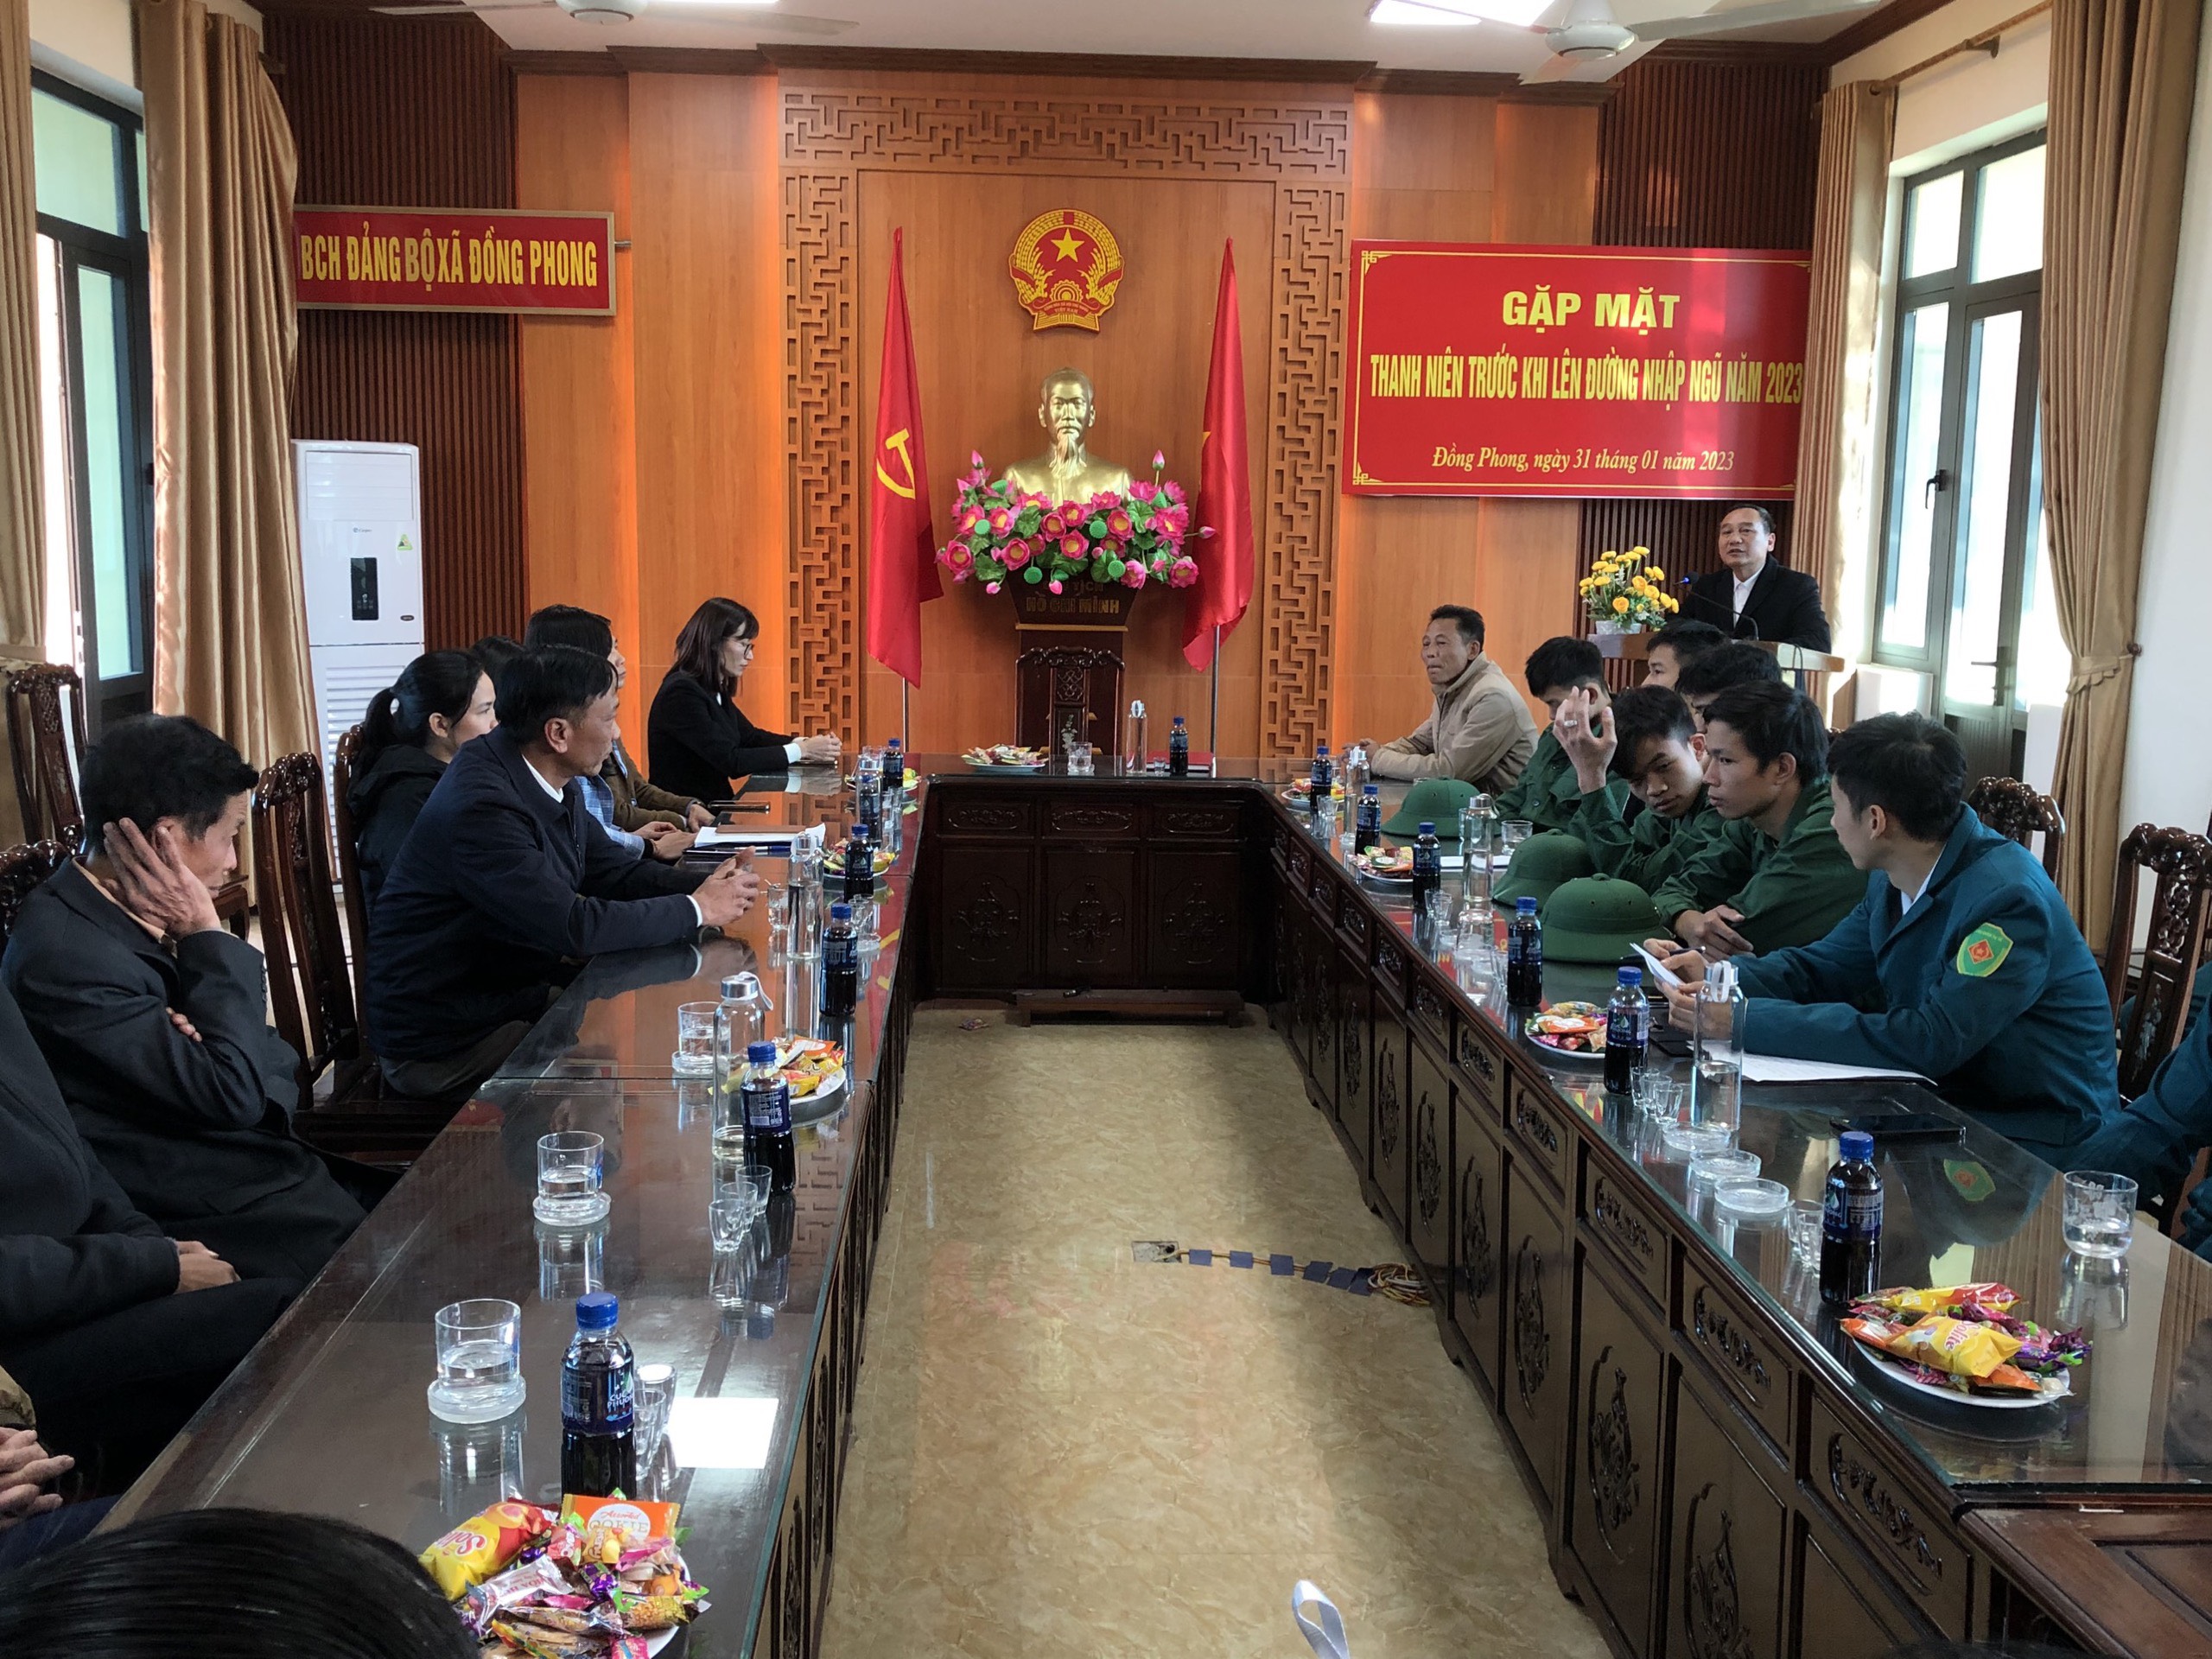 Xã Đồng Phong tổ chức gặp mặt các Thanh niên trước khi lên  đường nhập ngũ năm 2023